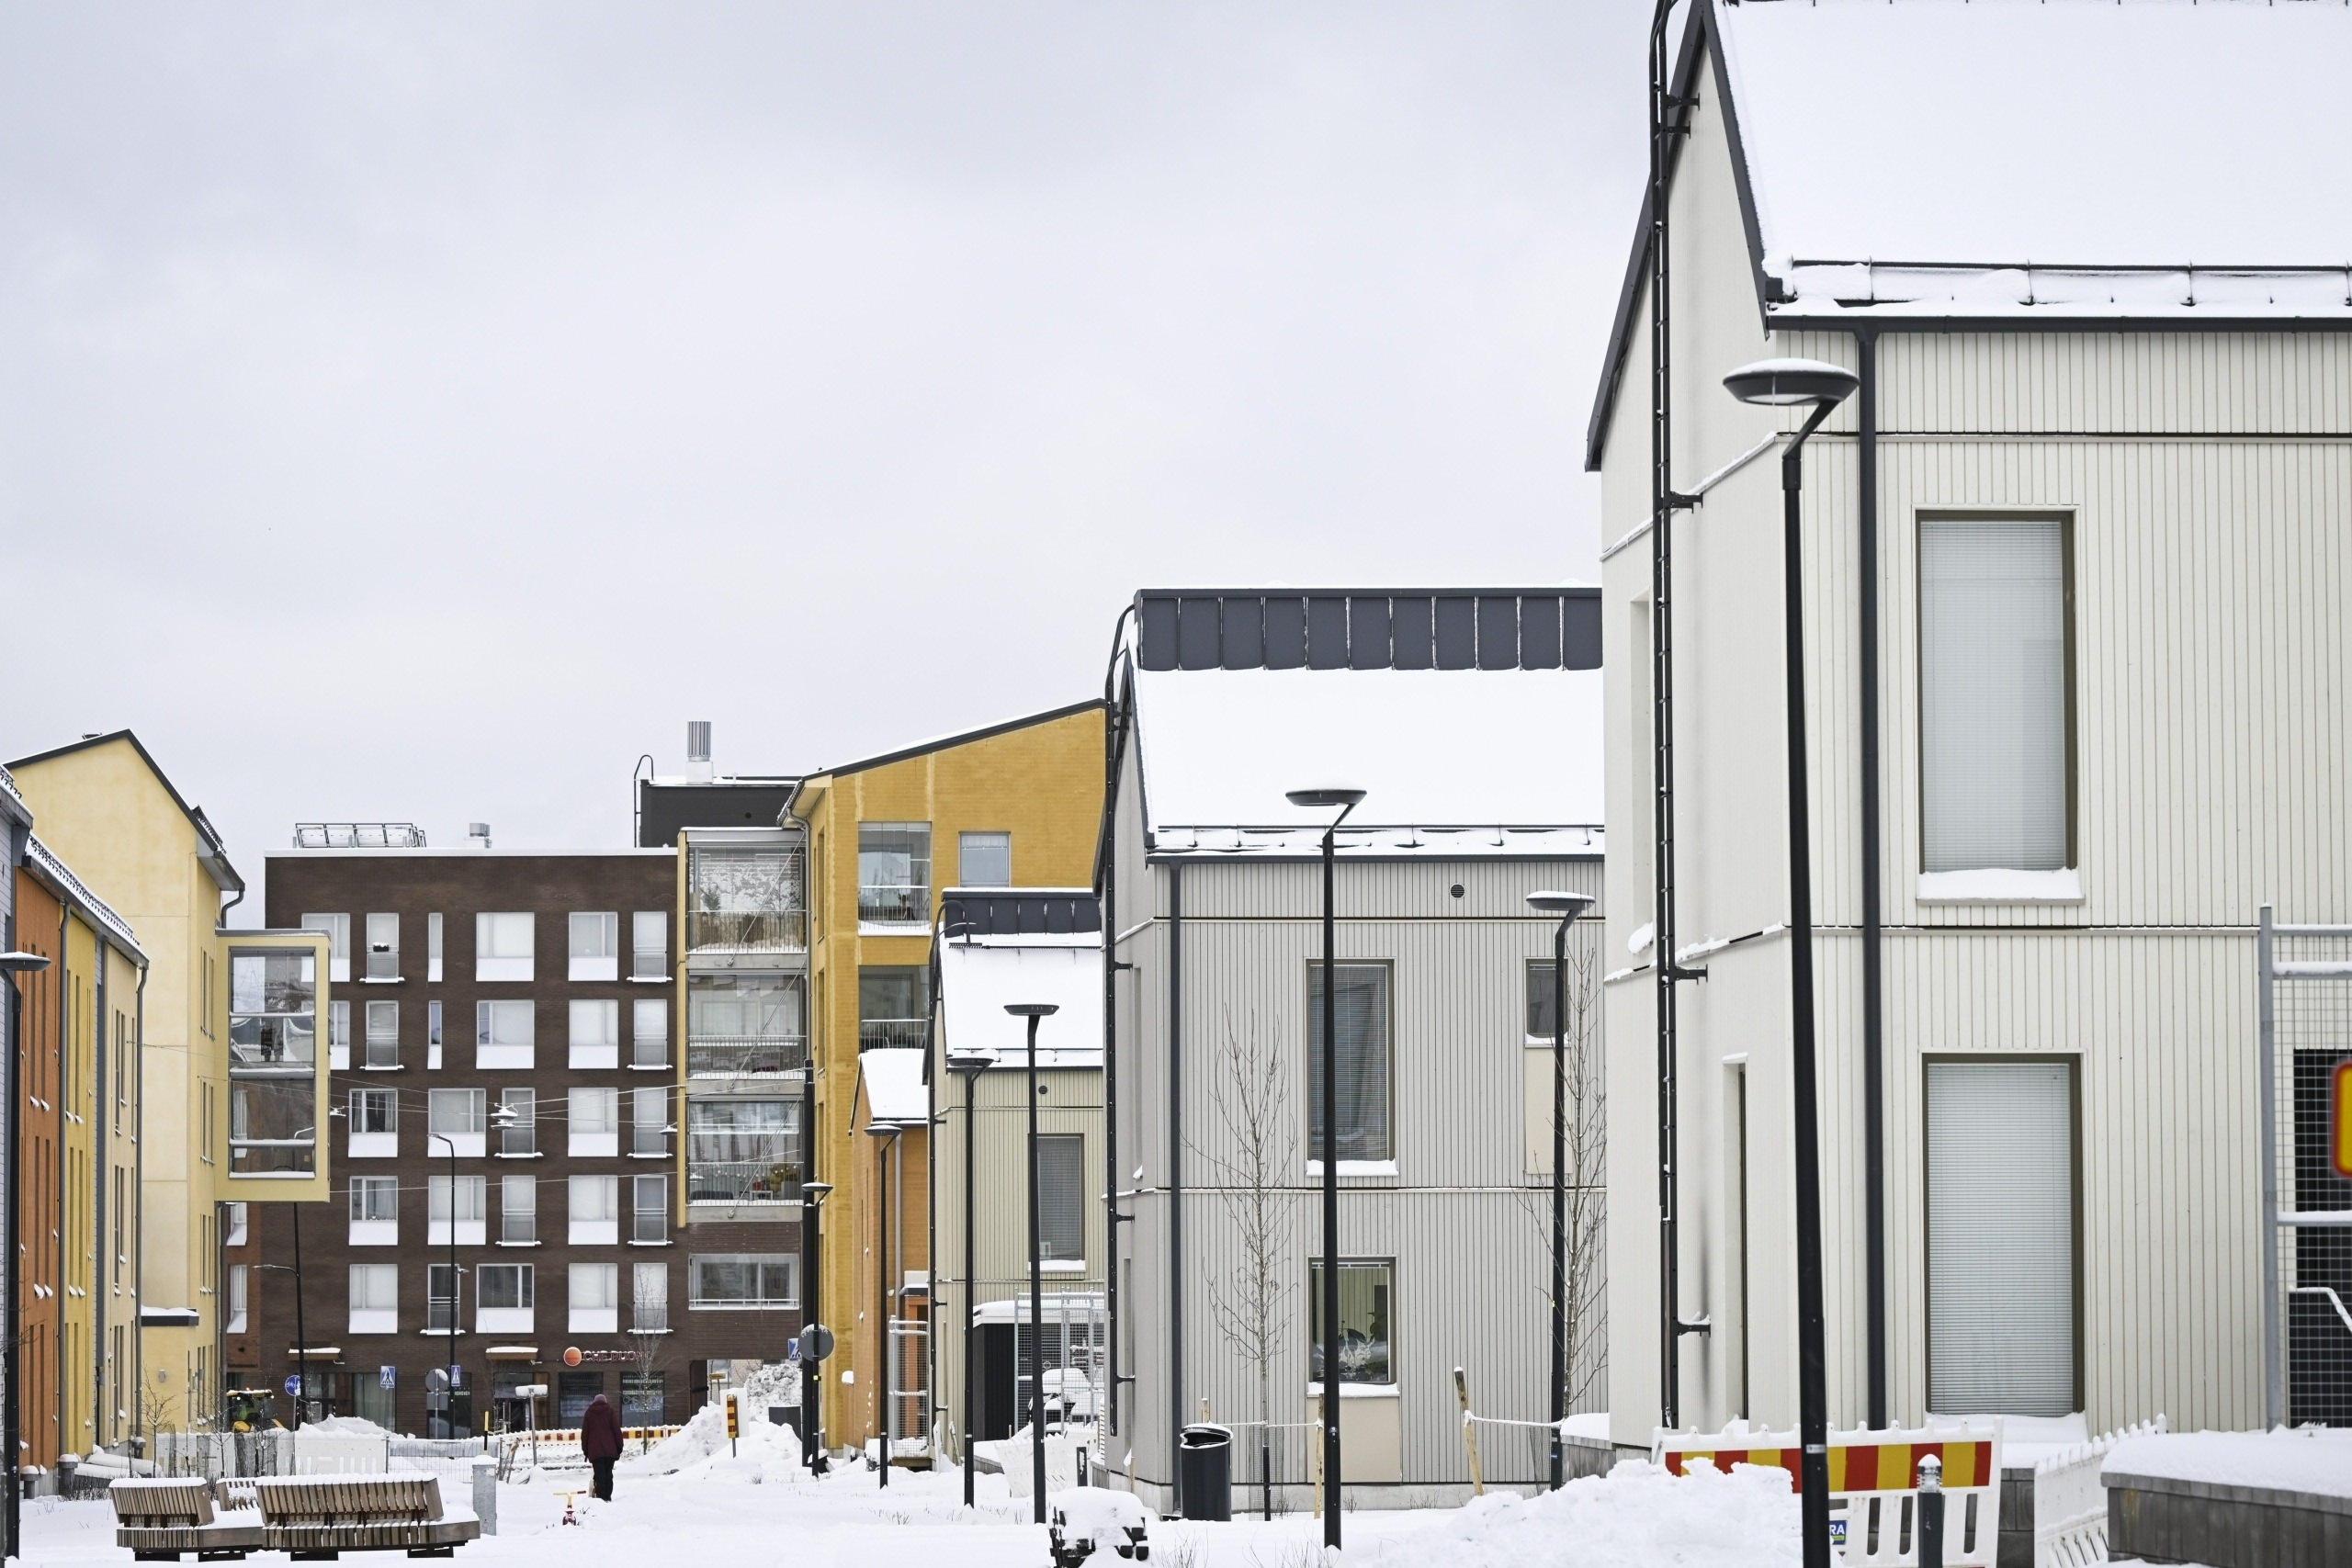 nordea: asuntokauppojen määrä kasvoi, kun ensiasunnon ostajat ryntäsivät kaupoille